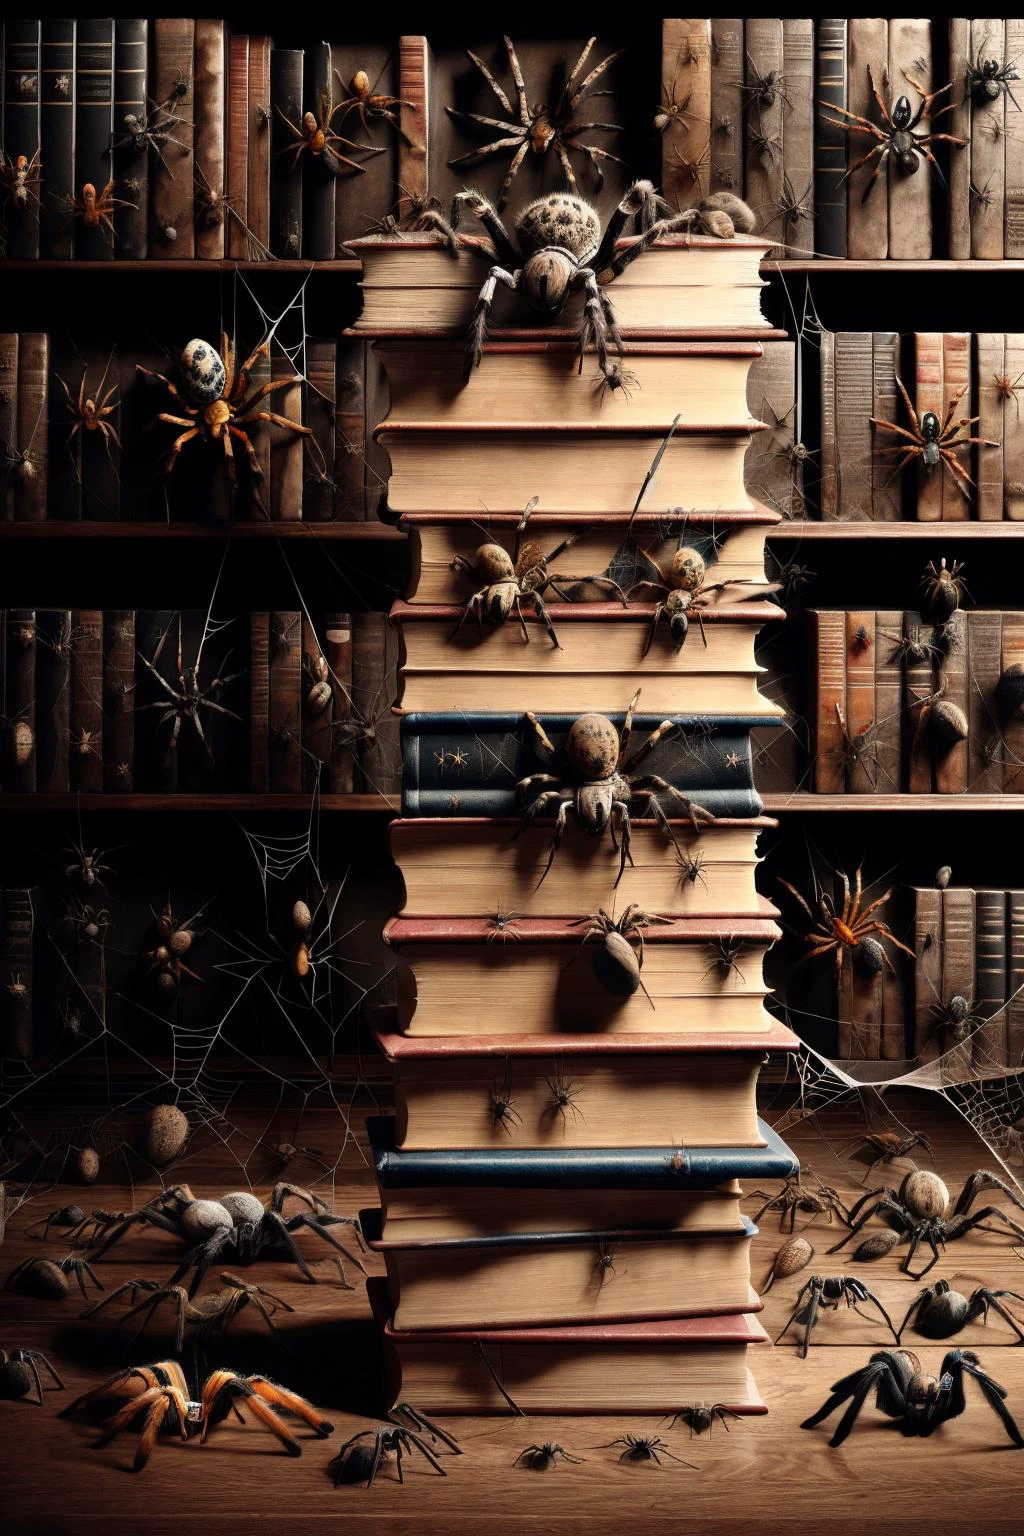 Ais-spiderz on a stack of books, in einer ruhigen Bibliothek 